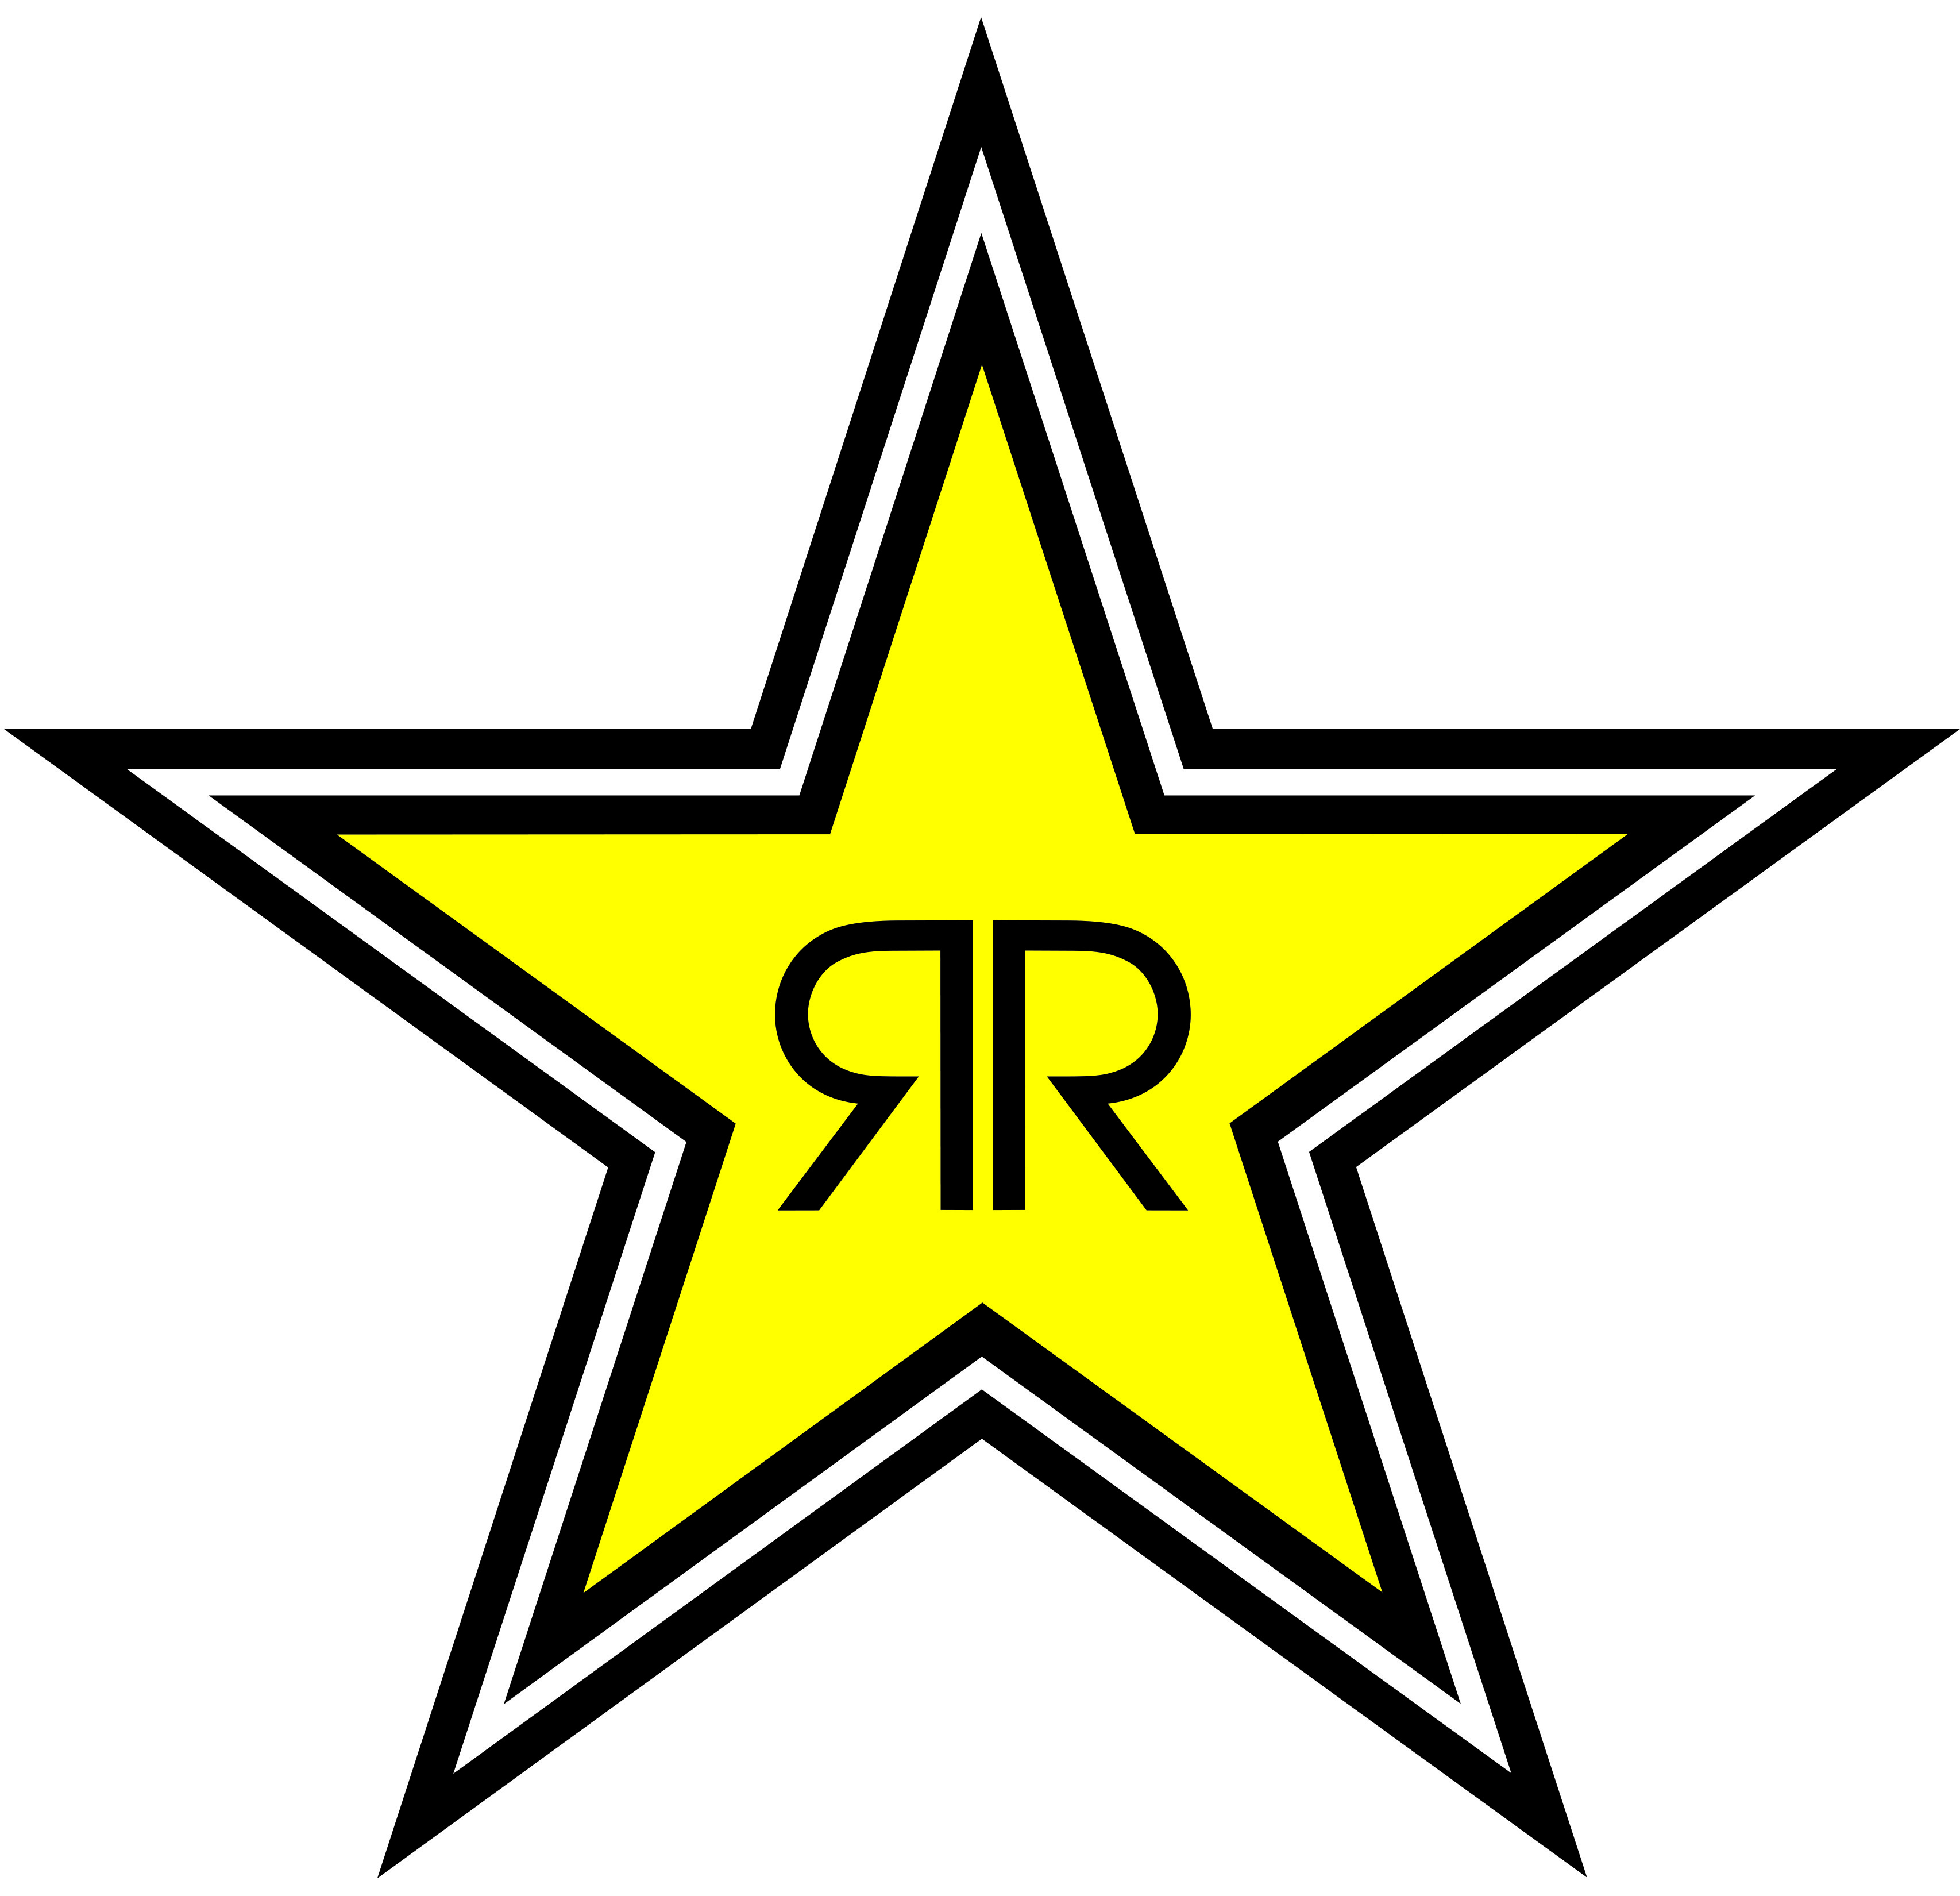 Rockstar Energy Logo Wallpaper